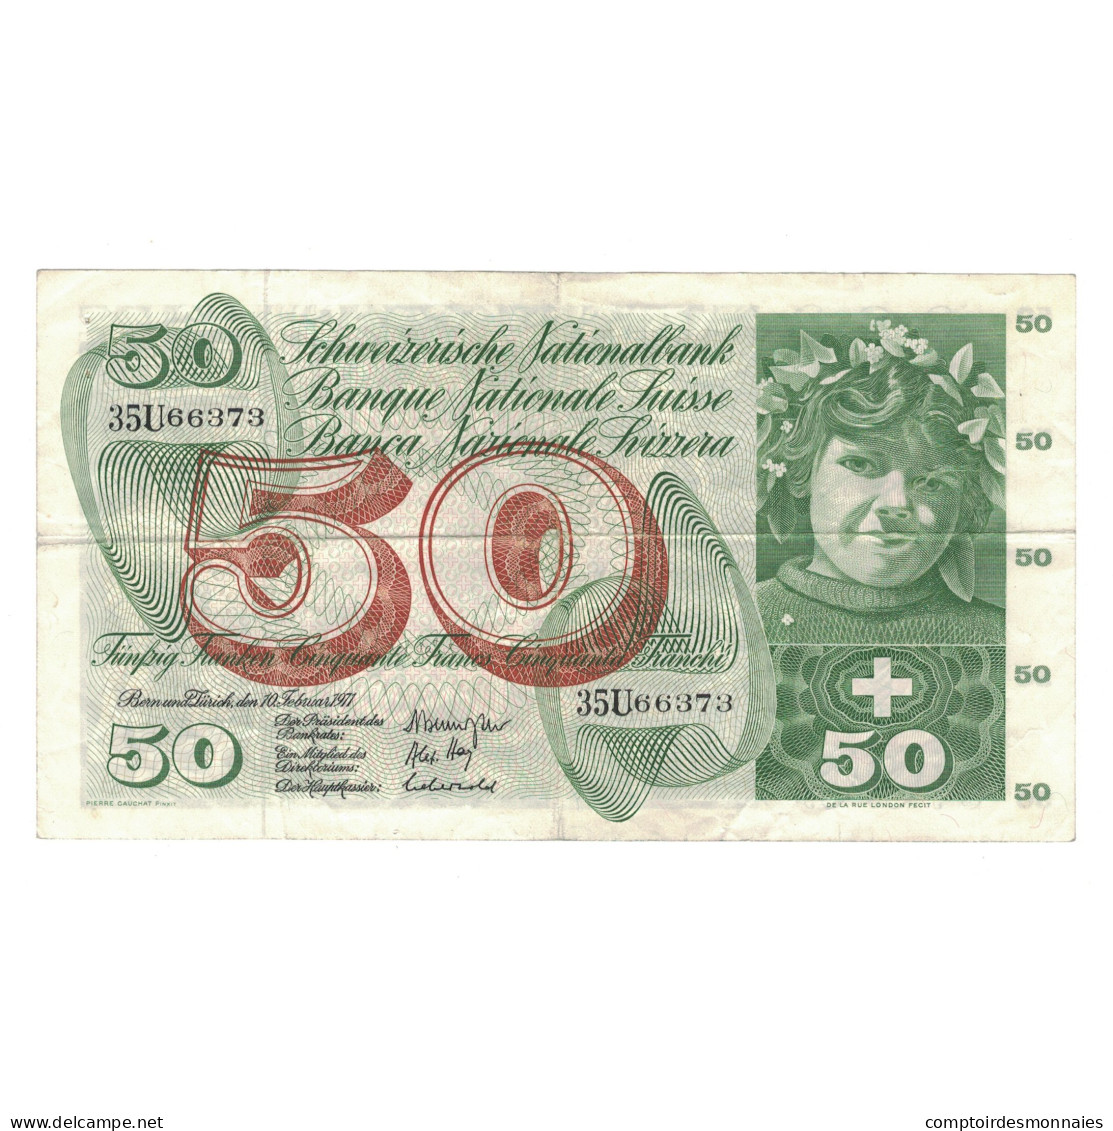 Billet, Suisse, 50 Franken, 1971, 1971-02-10, KM:48k, TTB - Suisse